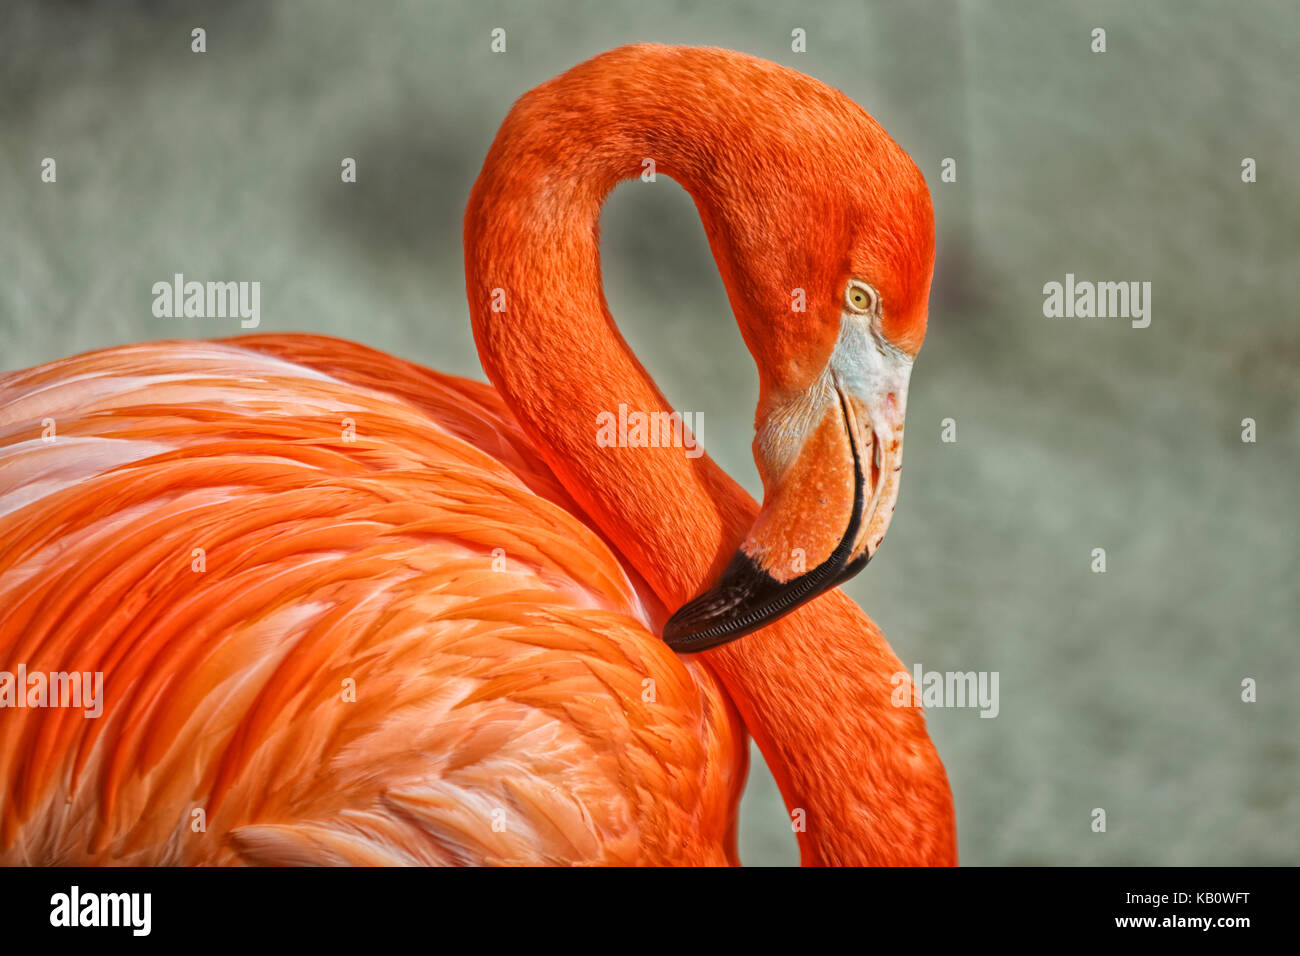 Ritratto di Flamingo con sfondo sfocato che mostra la testa, il collo e parte del corpo Foto Stock